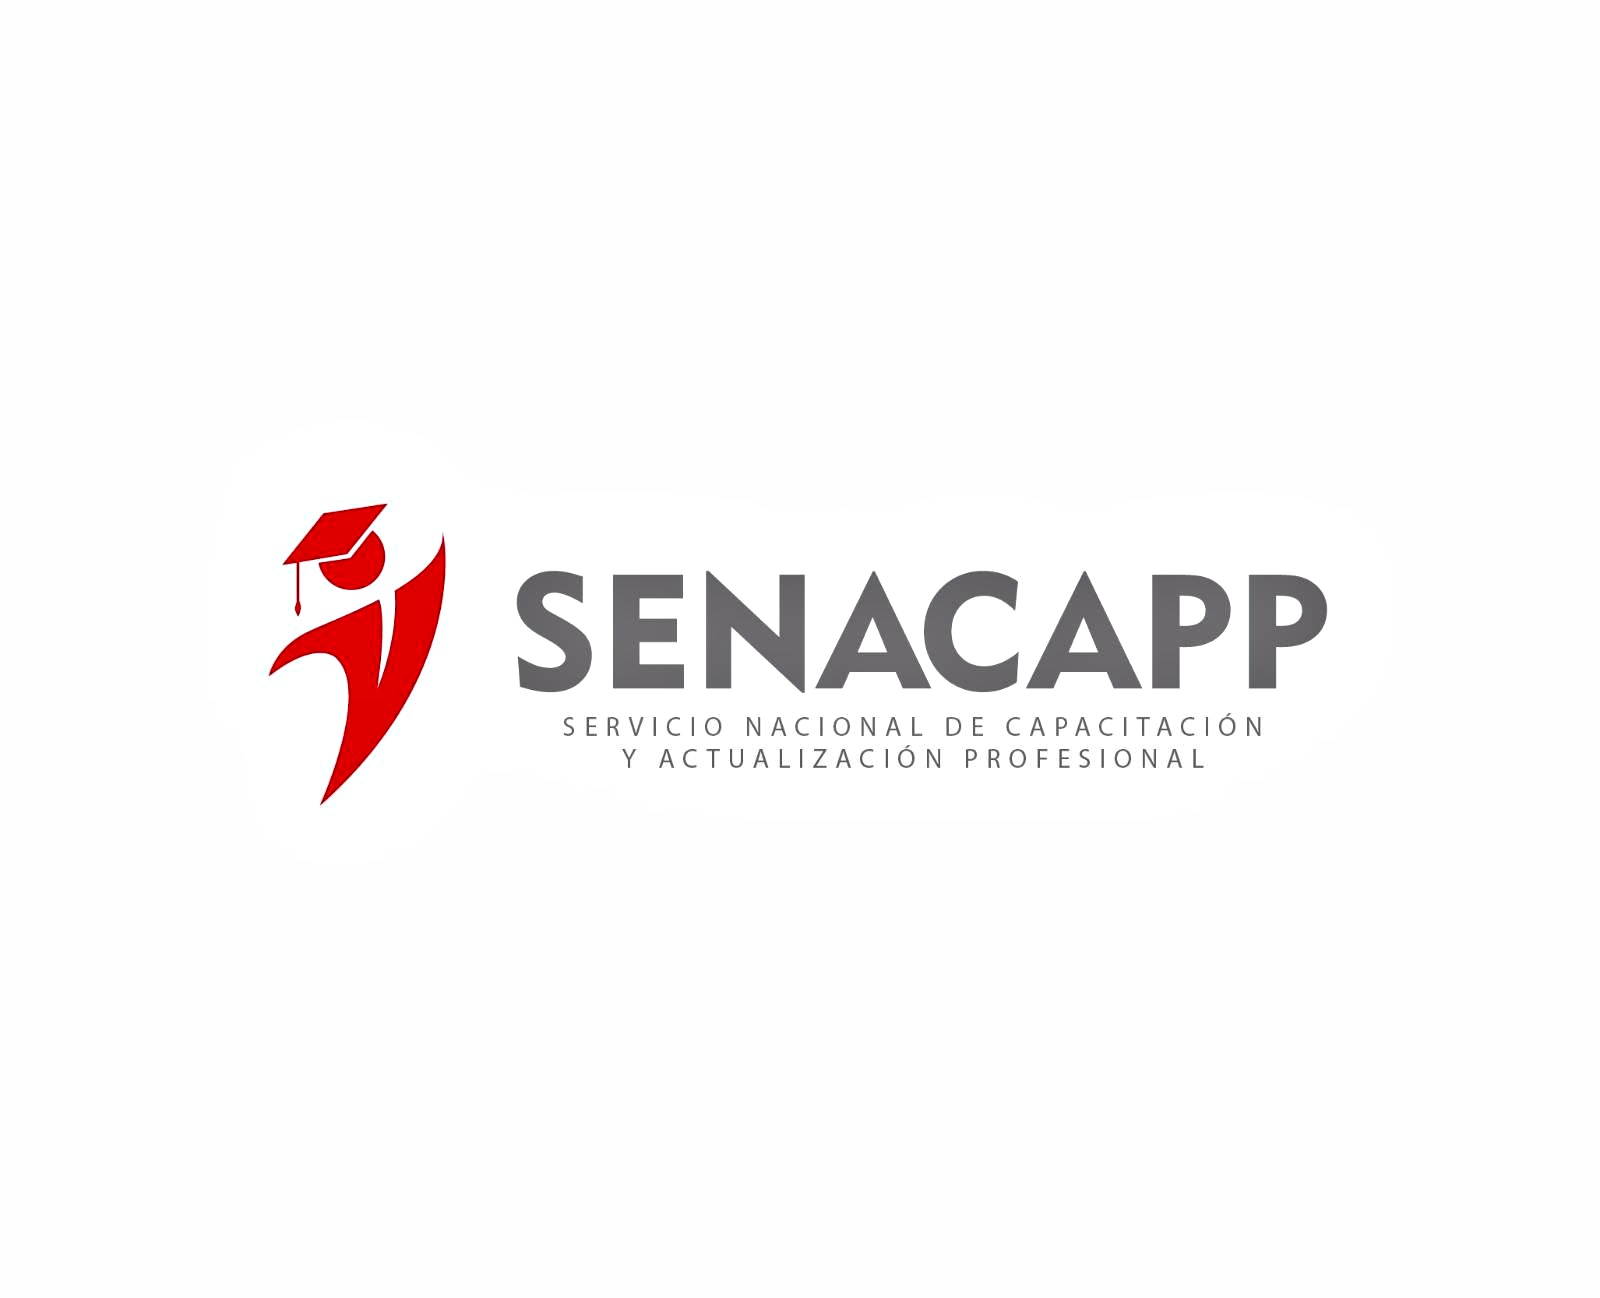 SENACAPP - Servicio Nacional de Capacitación y Actualización Profesional